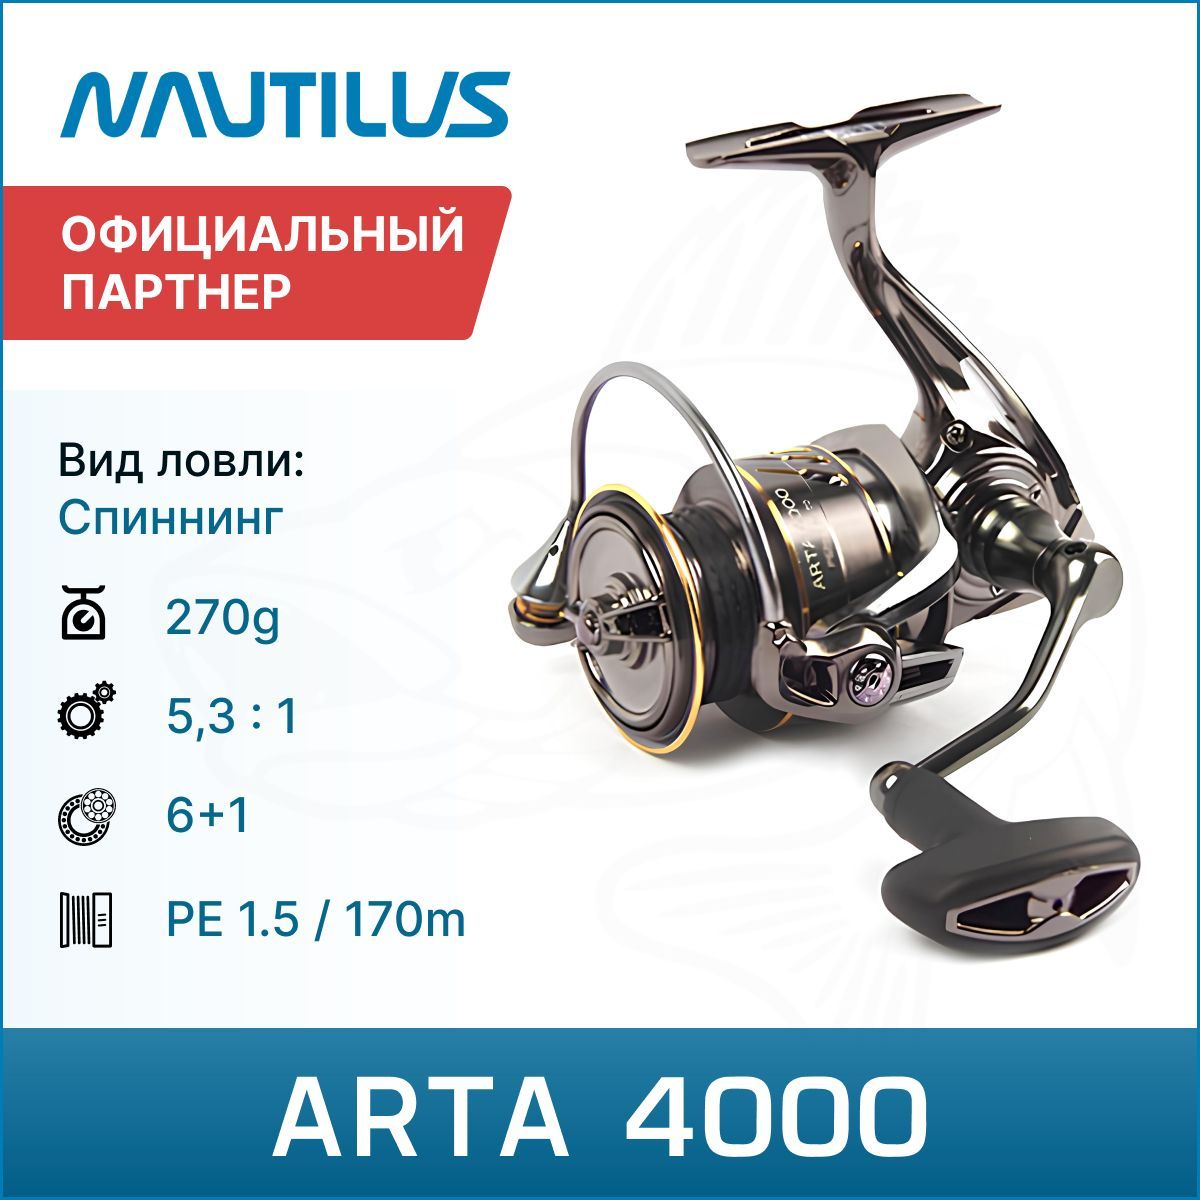 Катушка Nautilus Arta 2500s. Катушка для спиннинга Nautilus Arta. Arta катушка